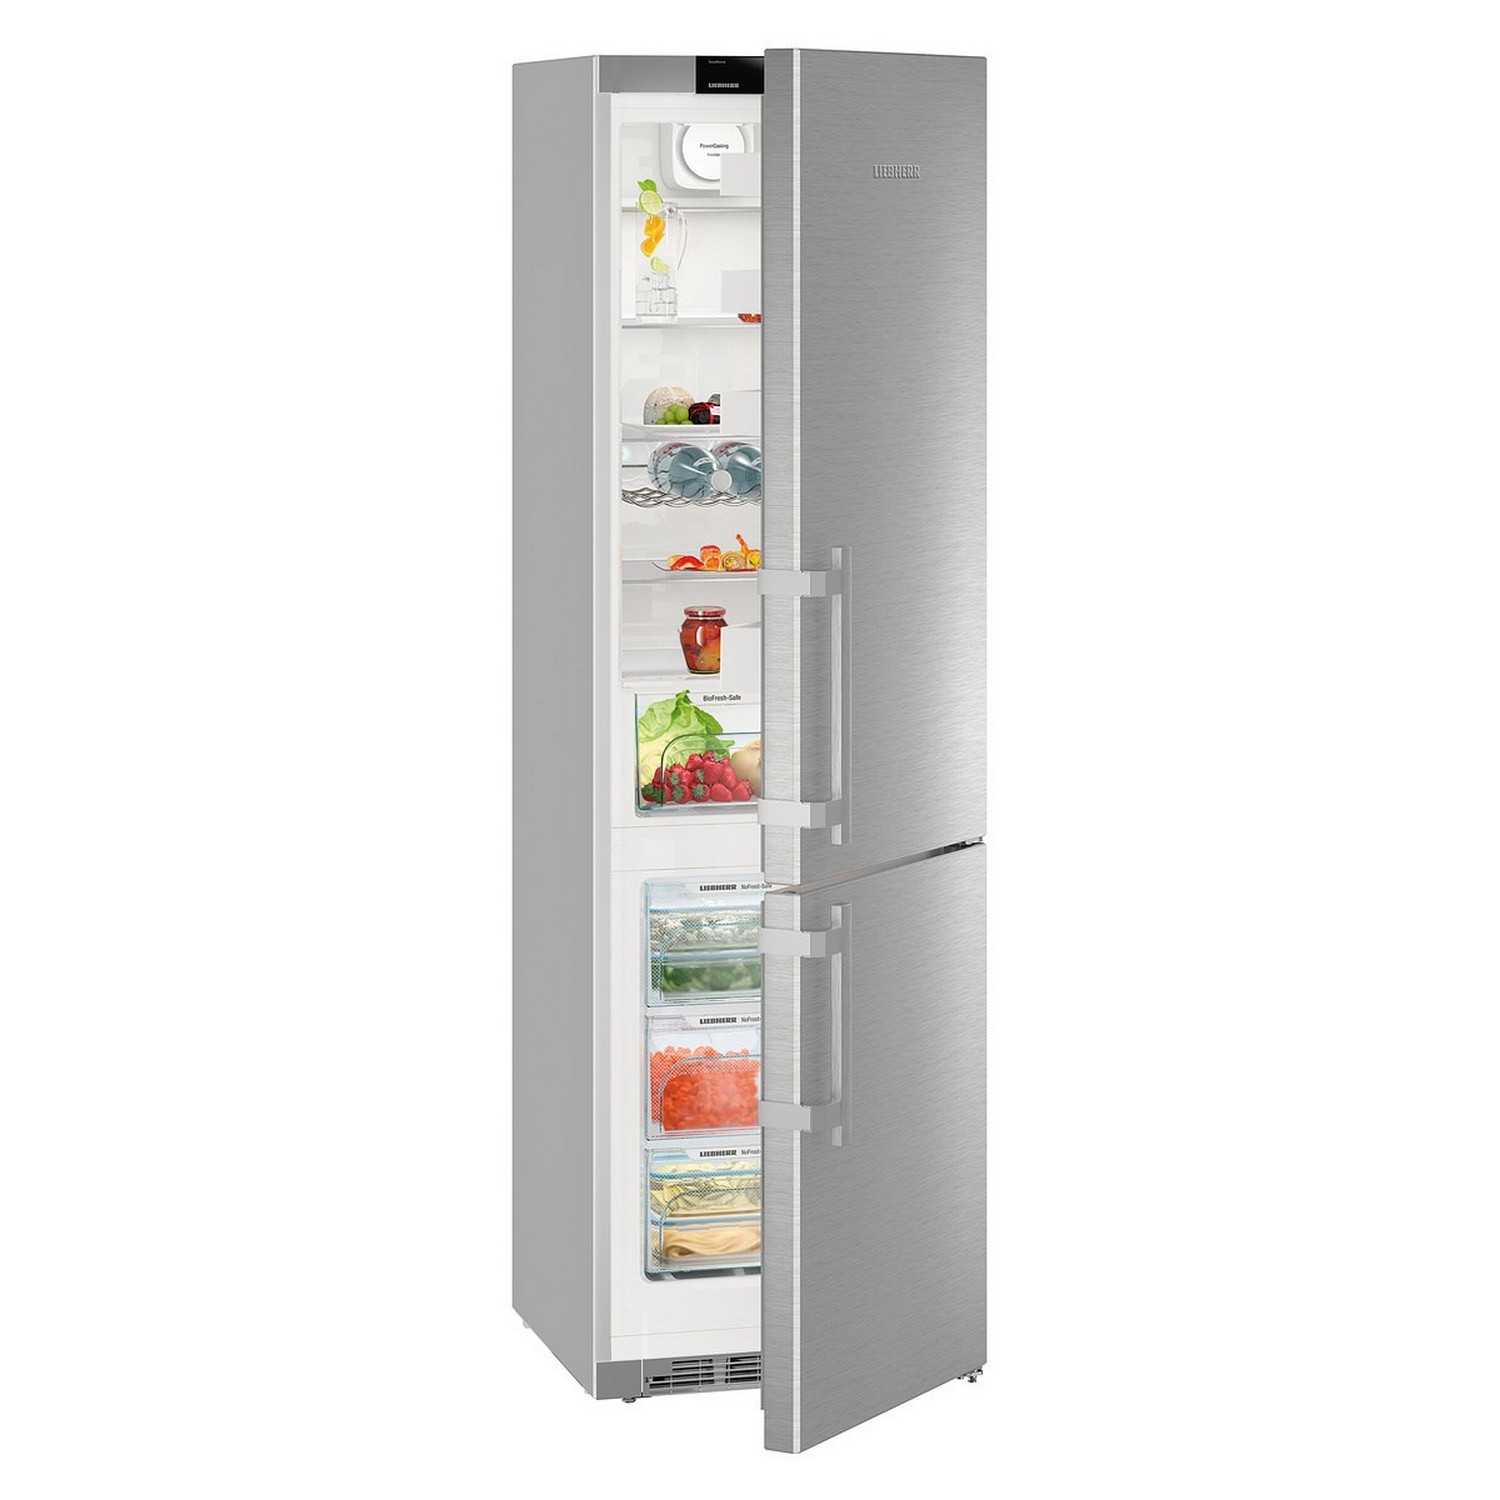 Выбираем холодильник liebherr: рейтинг по ценовой категории и функционалу, особенности и плюсы моделей либхер